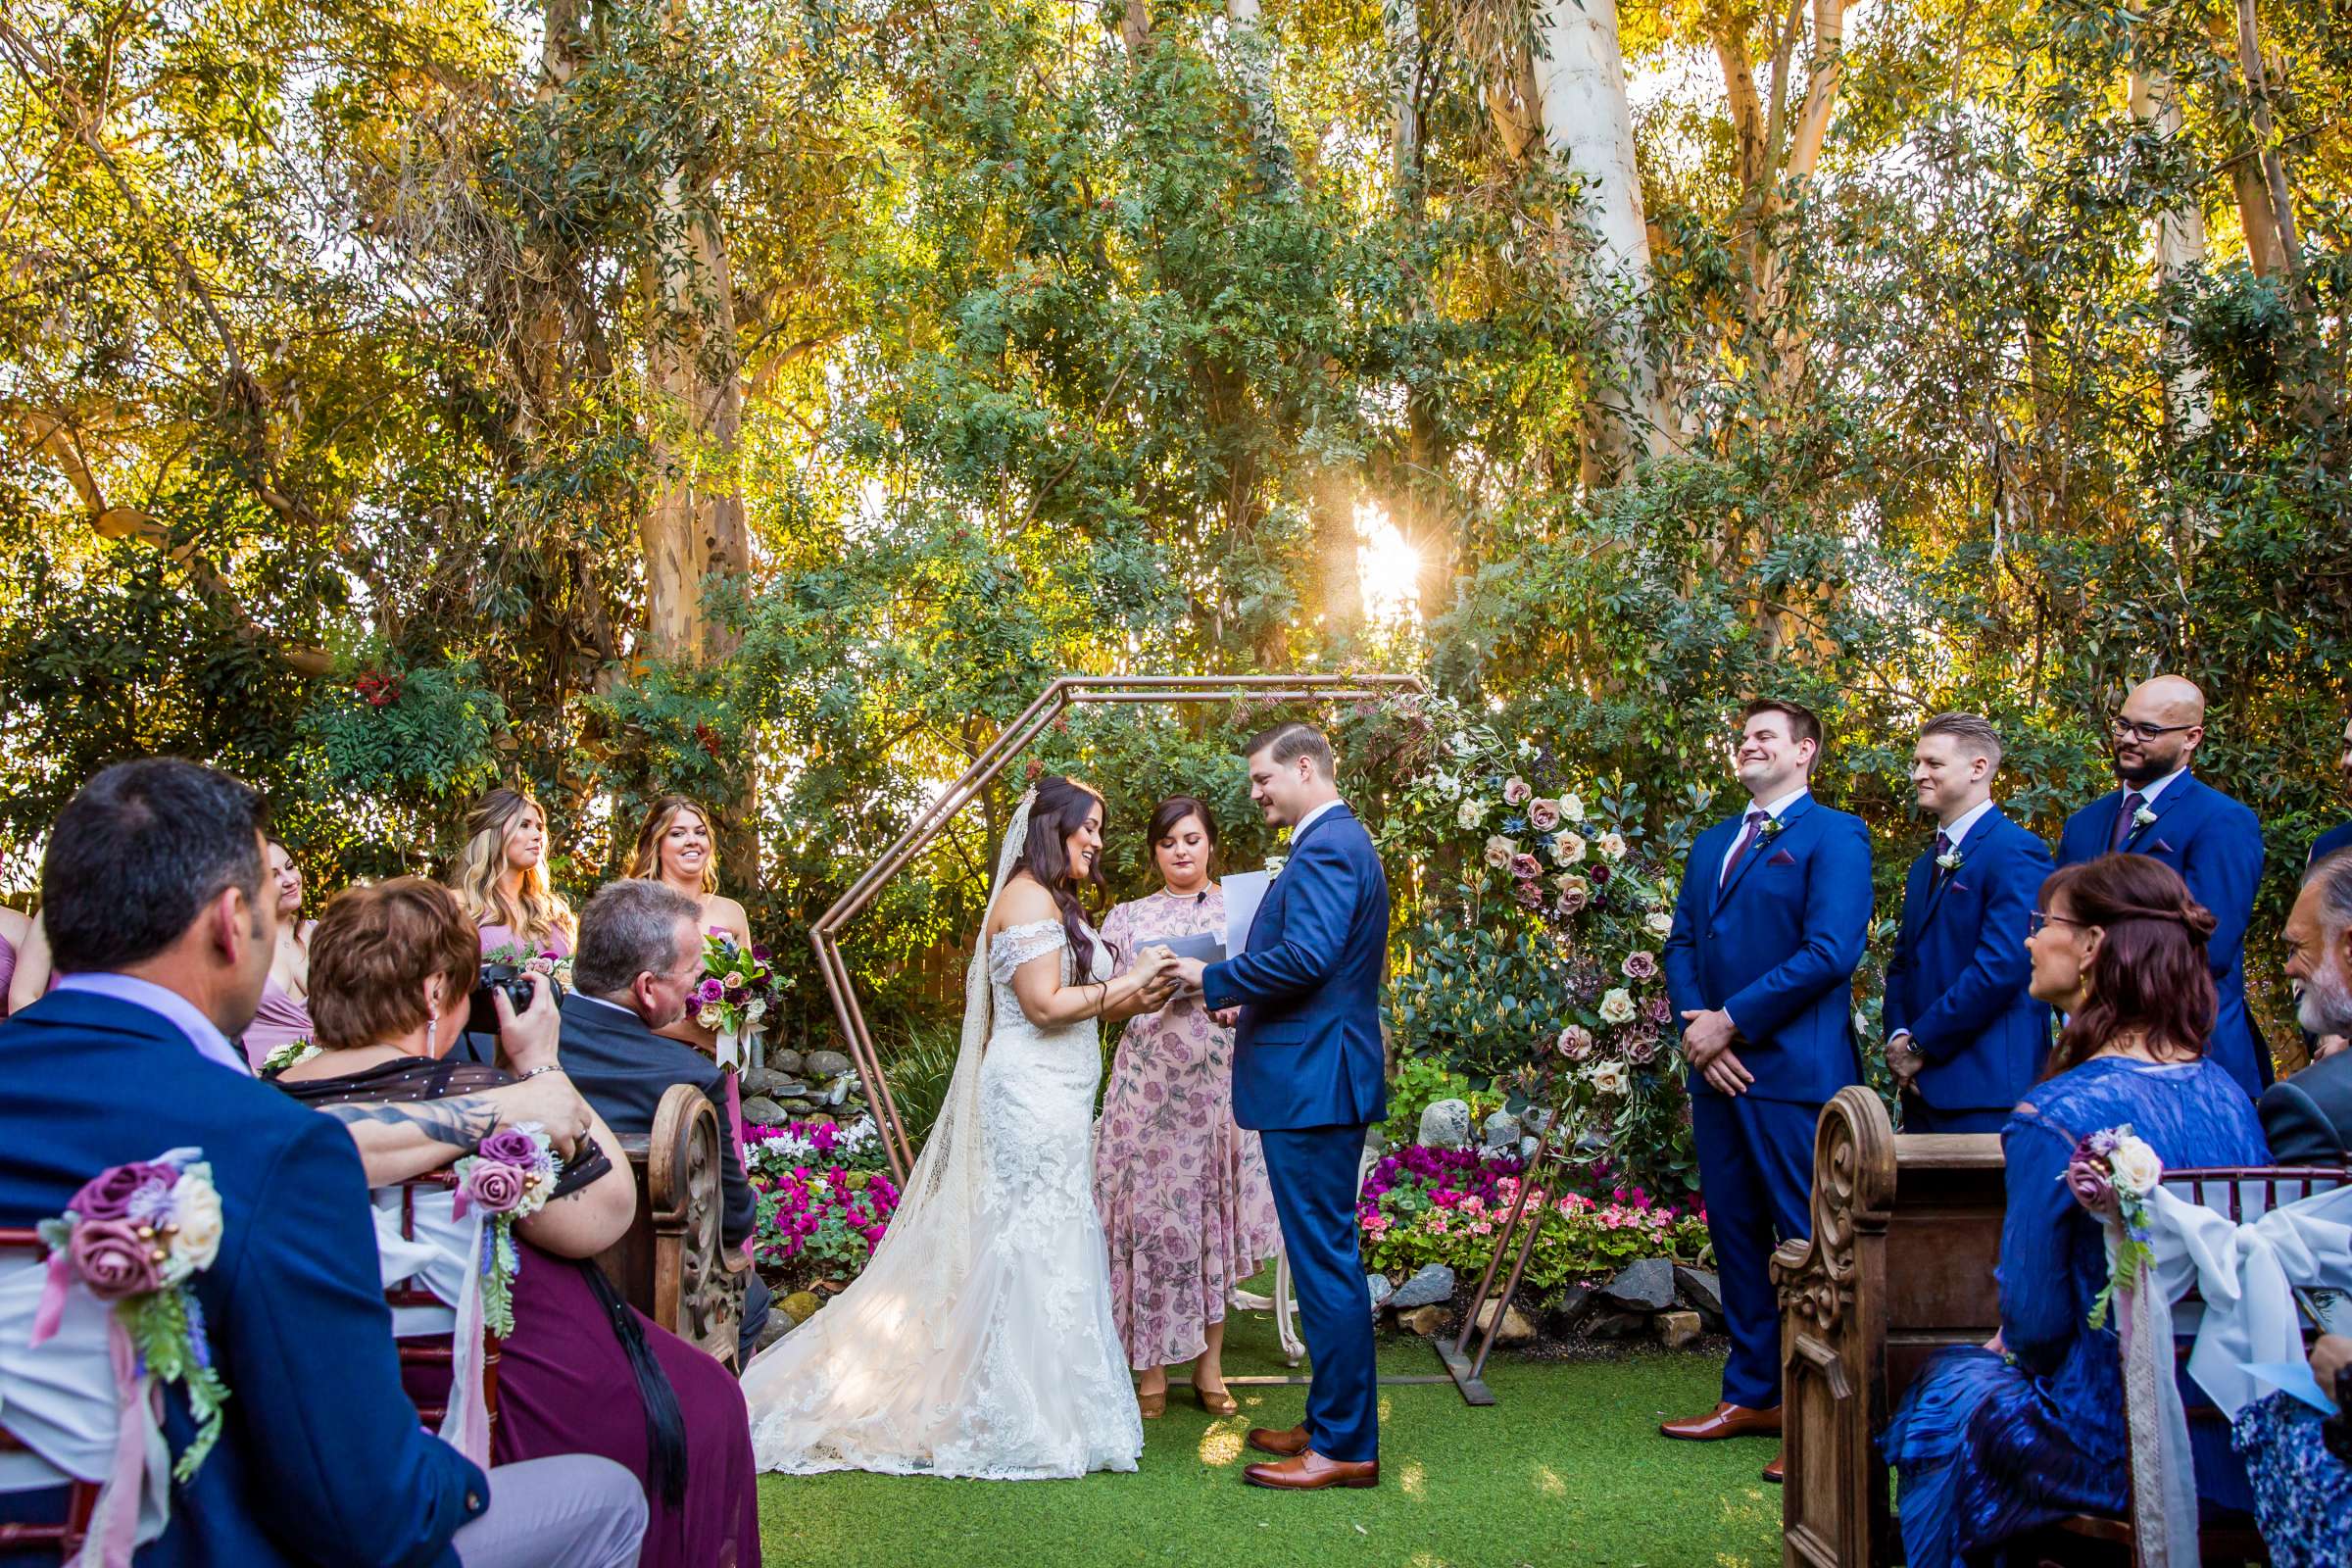 Twin Oaks House & Gardens Wedding Estate Wedding, Stephanie and Ilija Wedding Photo #75 by True Photography